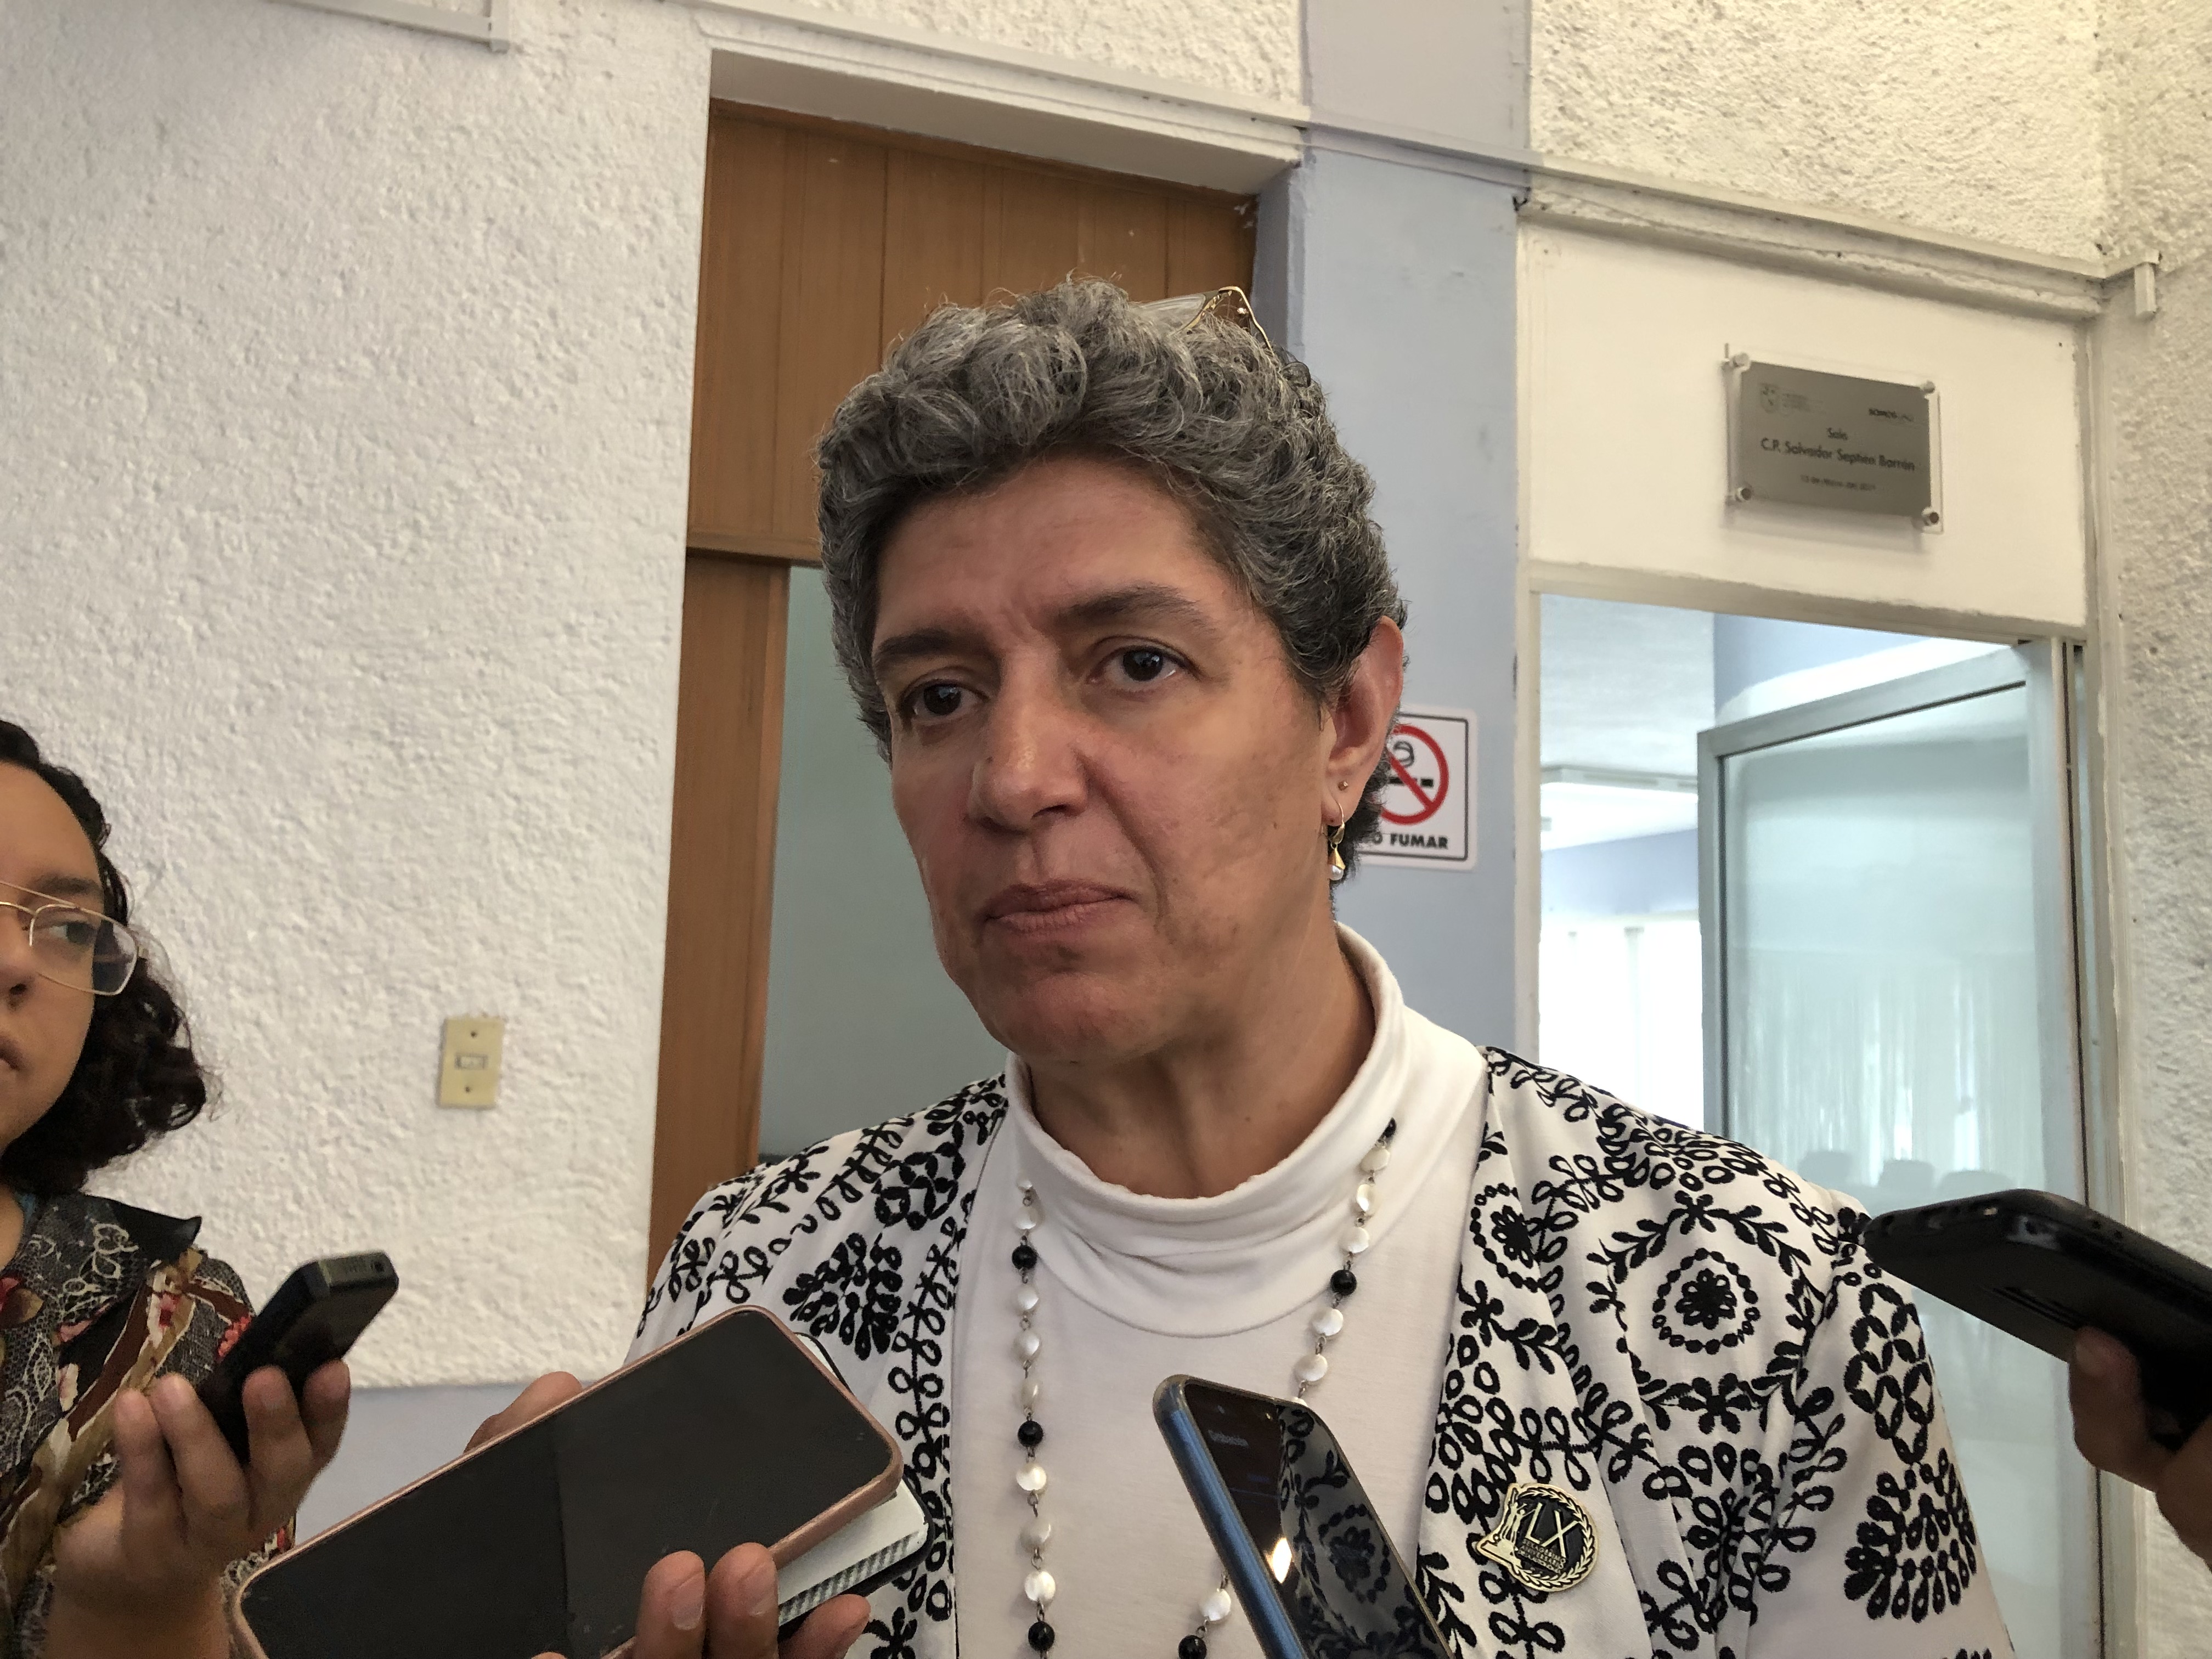  Rectora pide reconocer presencia del crimen organizado en Querétaro